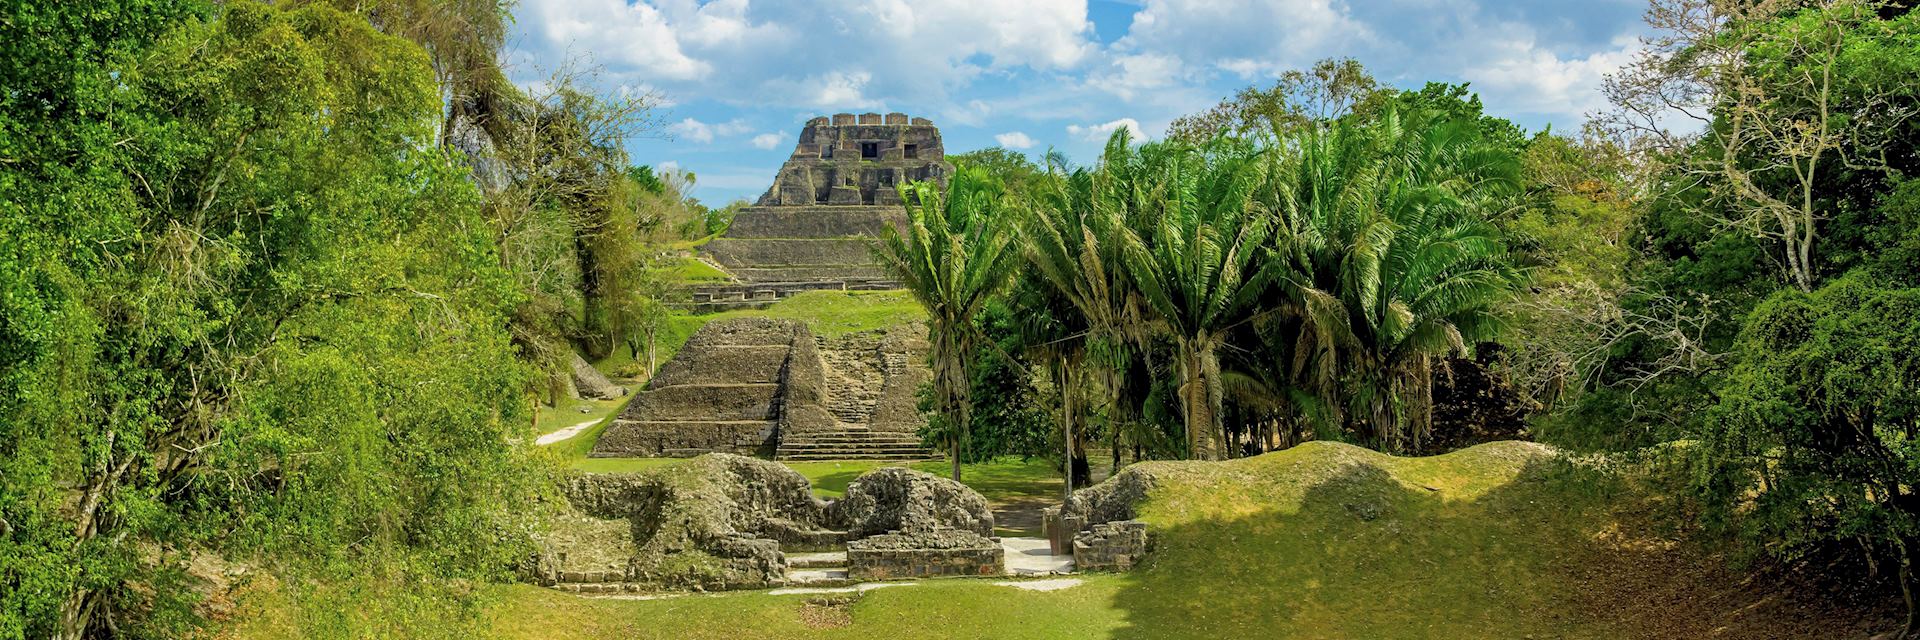 Mayan ruins at Xunantunich